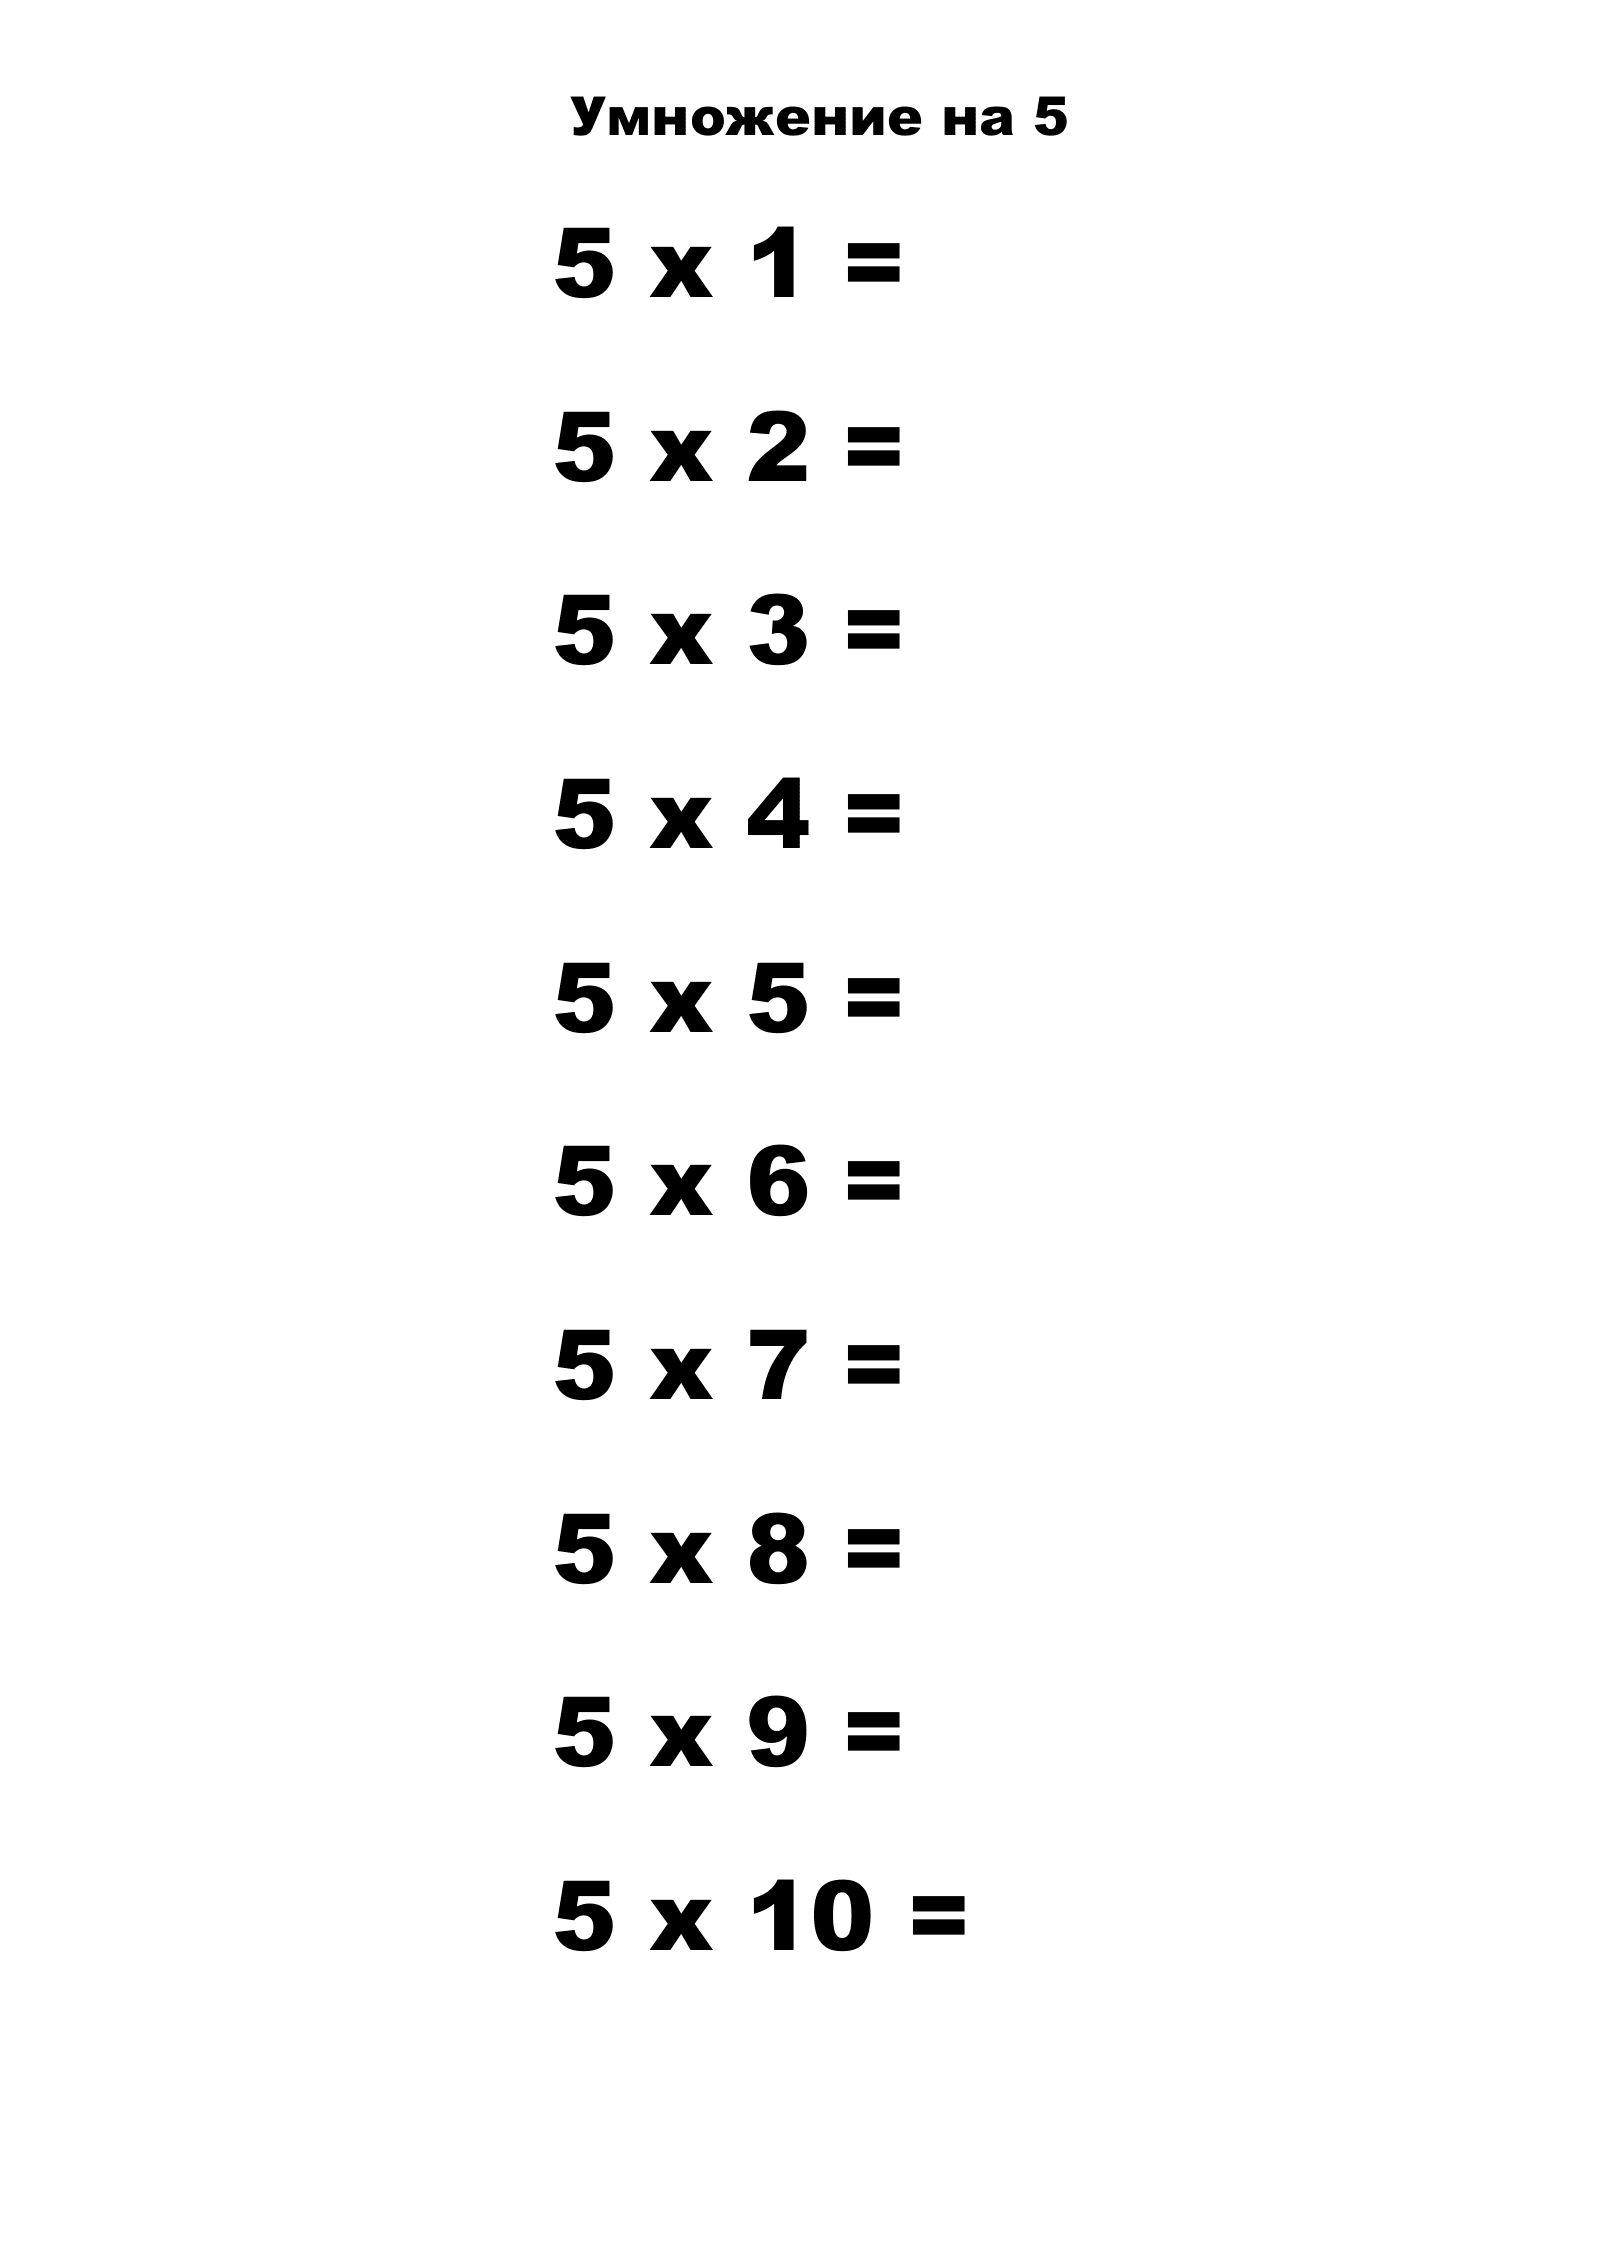 Таблица умножения на 5 без ответов. Распечатать